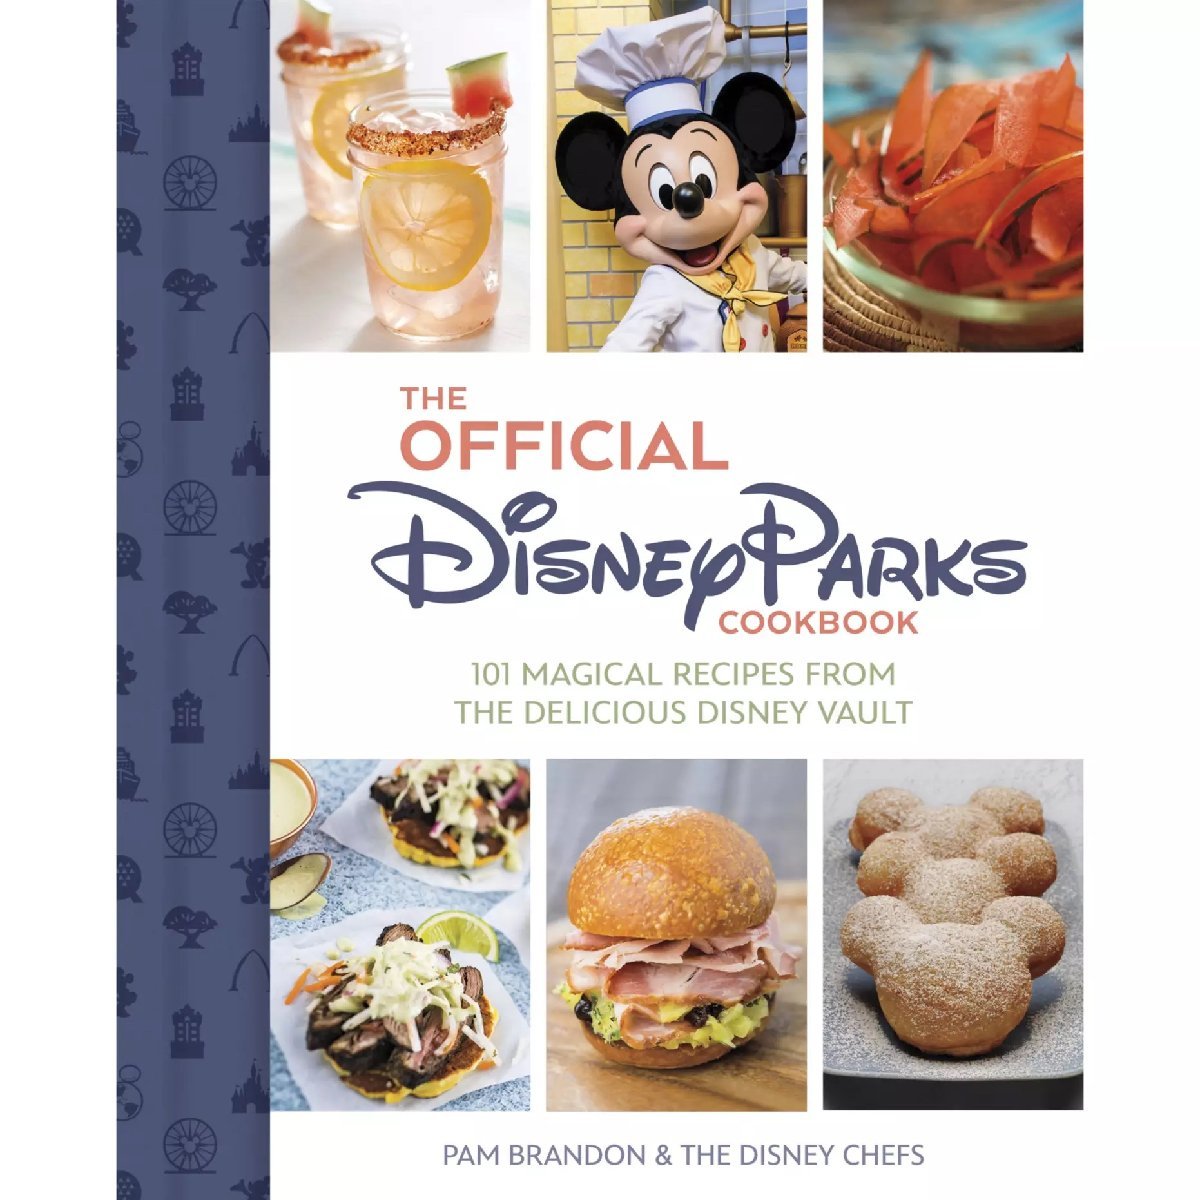 ディズニーランド パーククックブック The Official Disney Parks Cookbook: 101 Magical Recipes from the Delicious Disney Vault